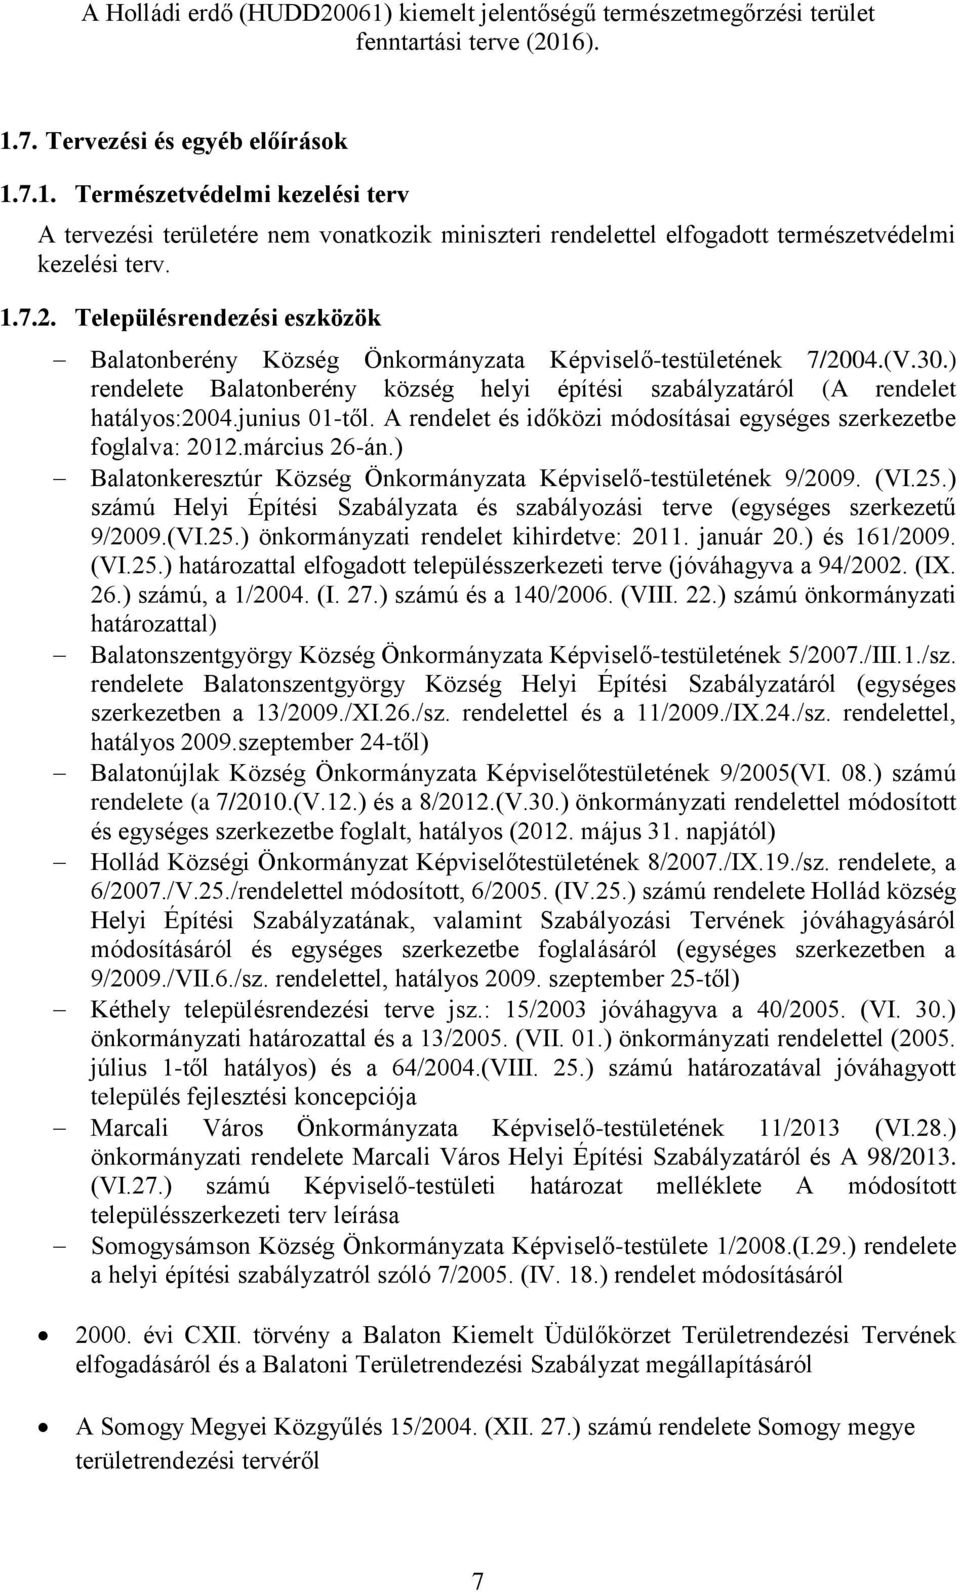 junius 01-től. A rendelet és időközi módosításai egységes szerkezetbe foglalva: 2012.március 26-án.) Balatonkeresztúr Község Önkormányzata Képviselő-testületének 9/2009. (VI.25.